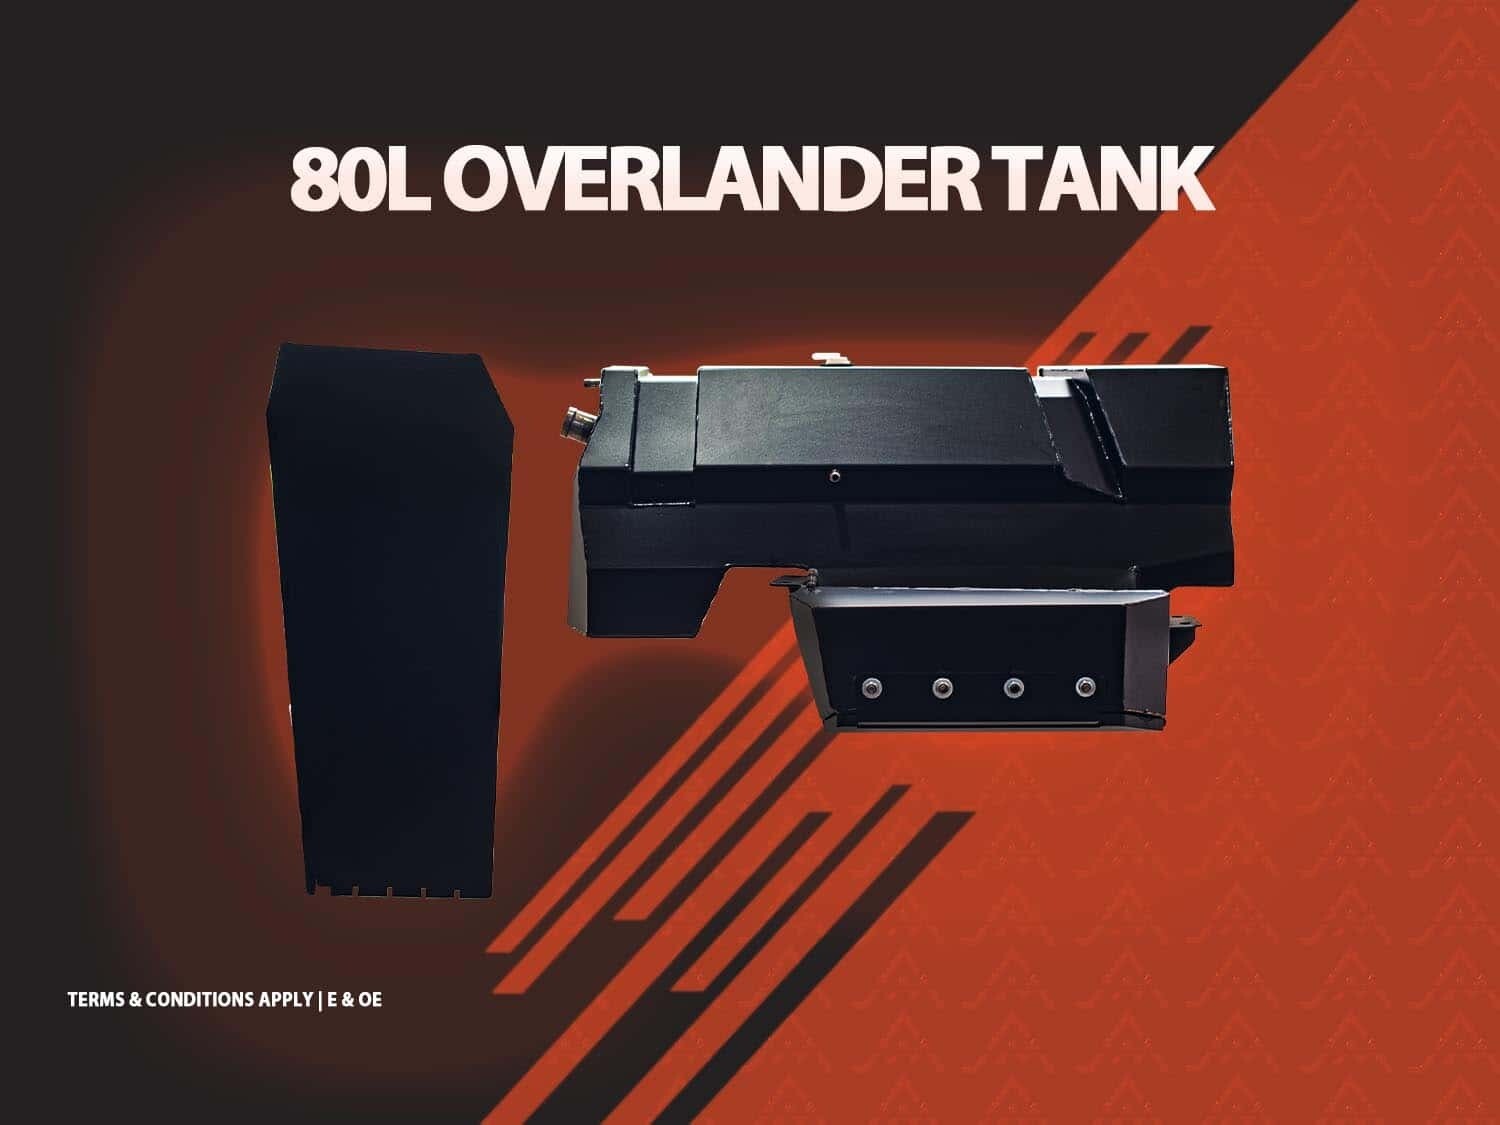 Des Sol Overlander – Gen 4 – 80 Litre Long Range Tank